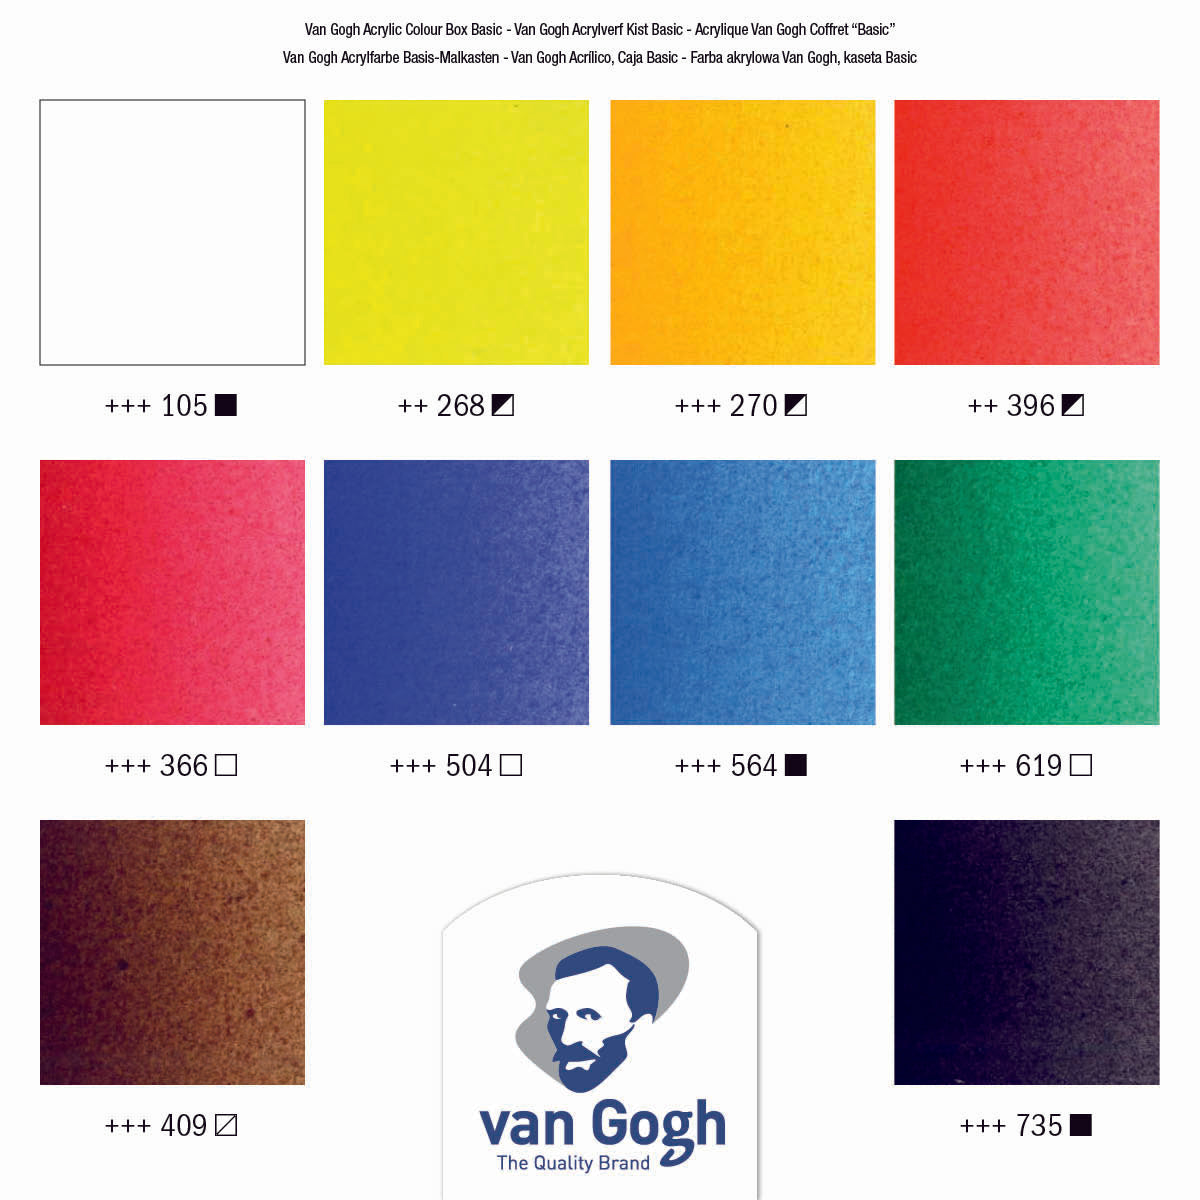 VAN GOGH Acrylfarbe Holzkasten-Set Basis